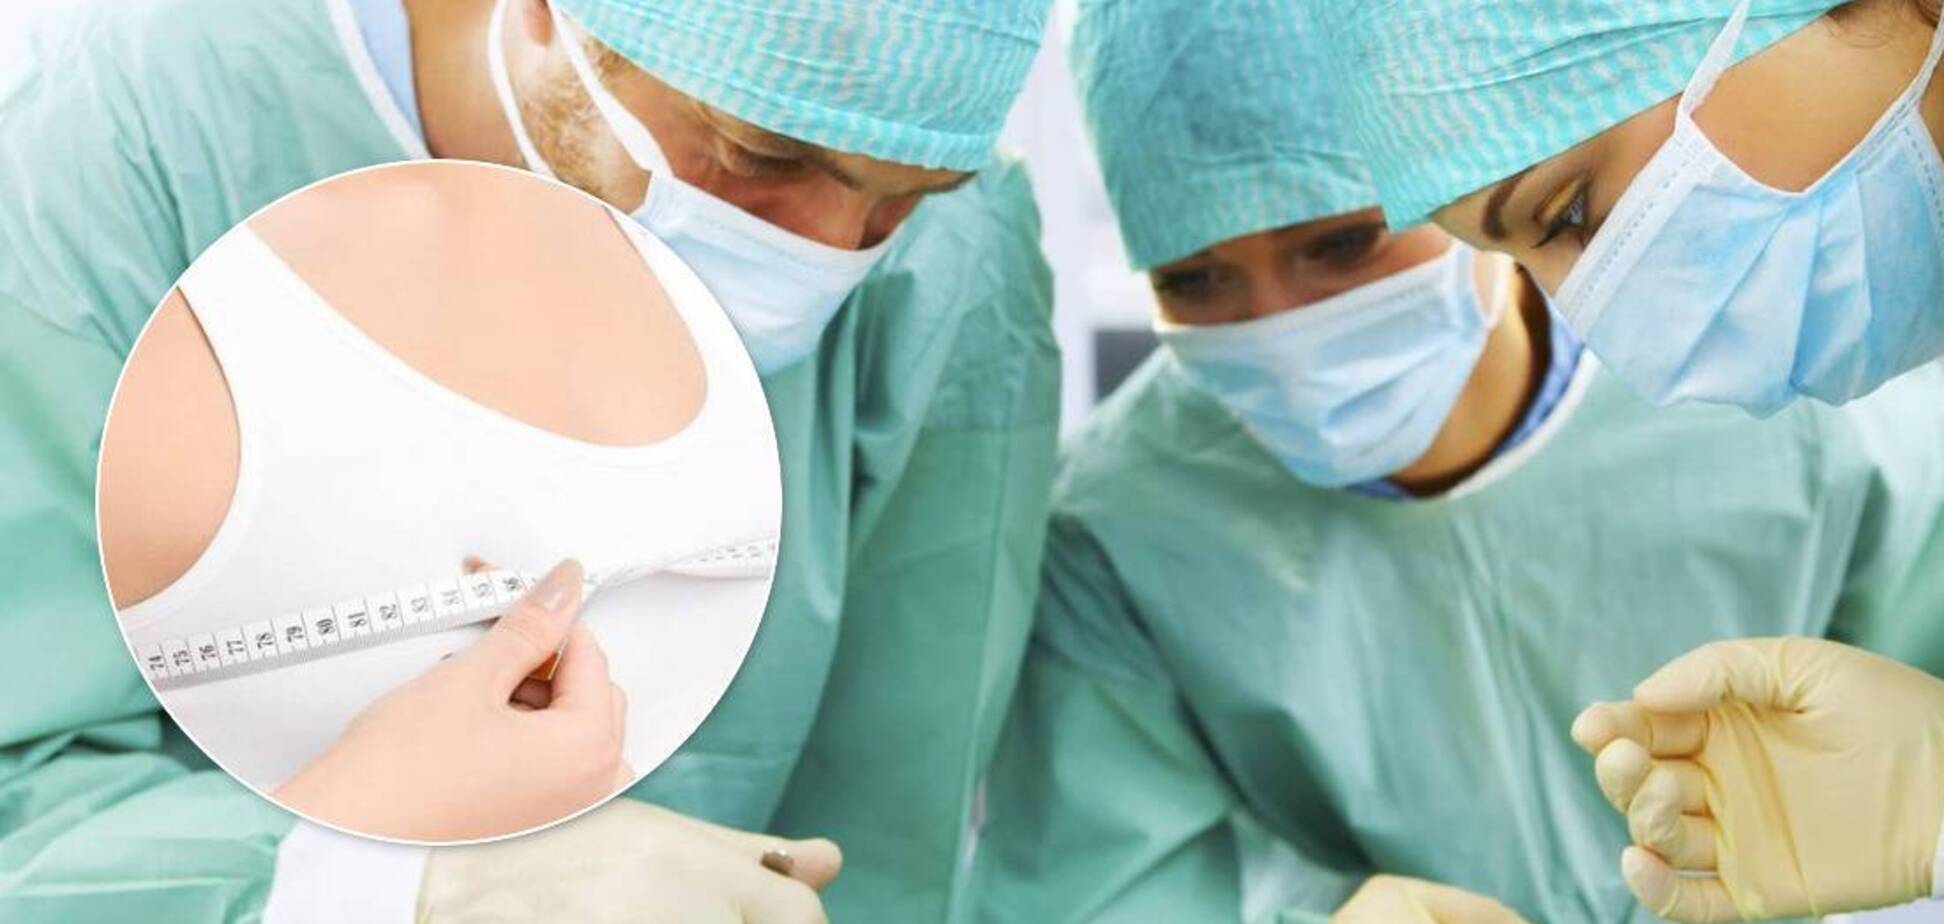 В Полтаве пластические хирурги 'искромсали' двух женщин: клиентки хотели увеличить грудь